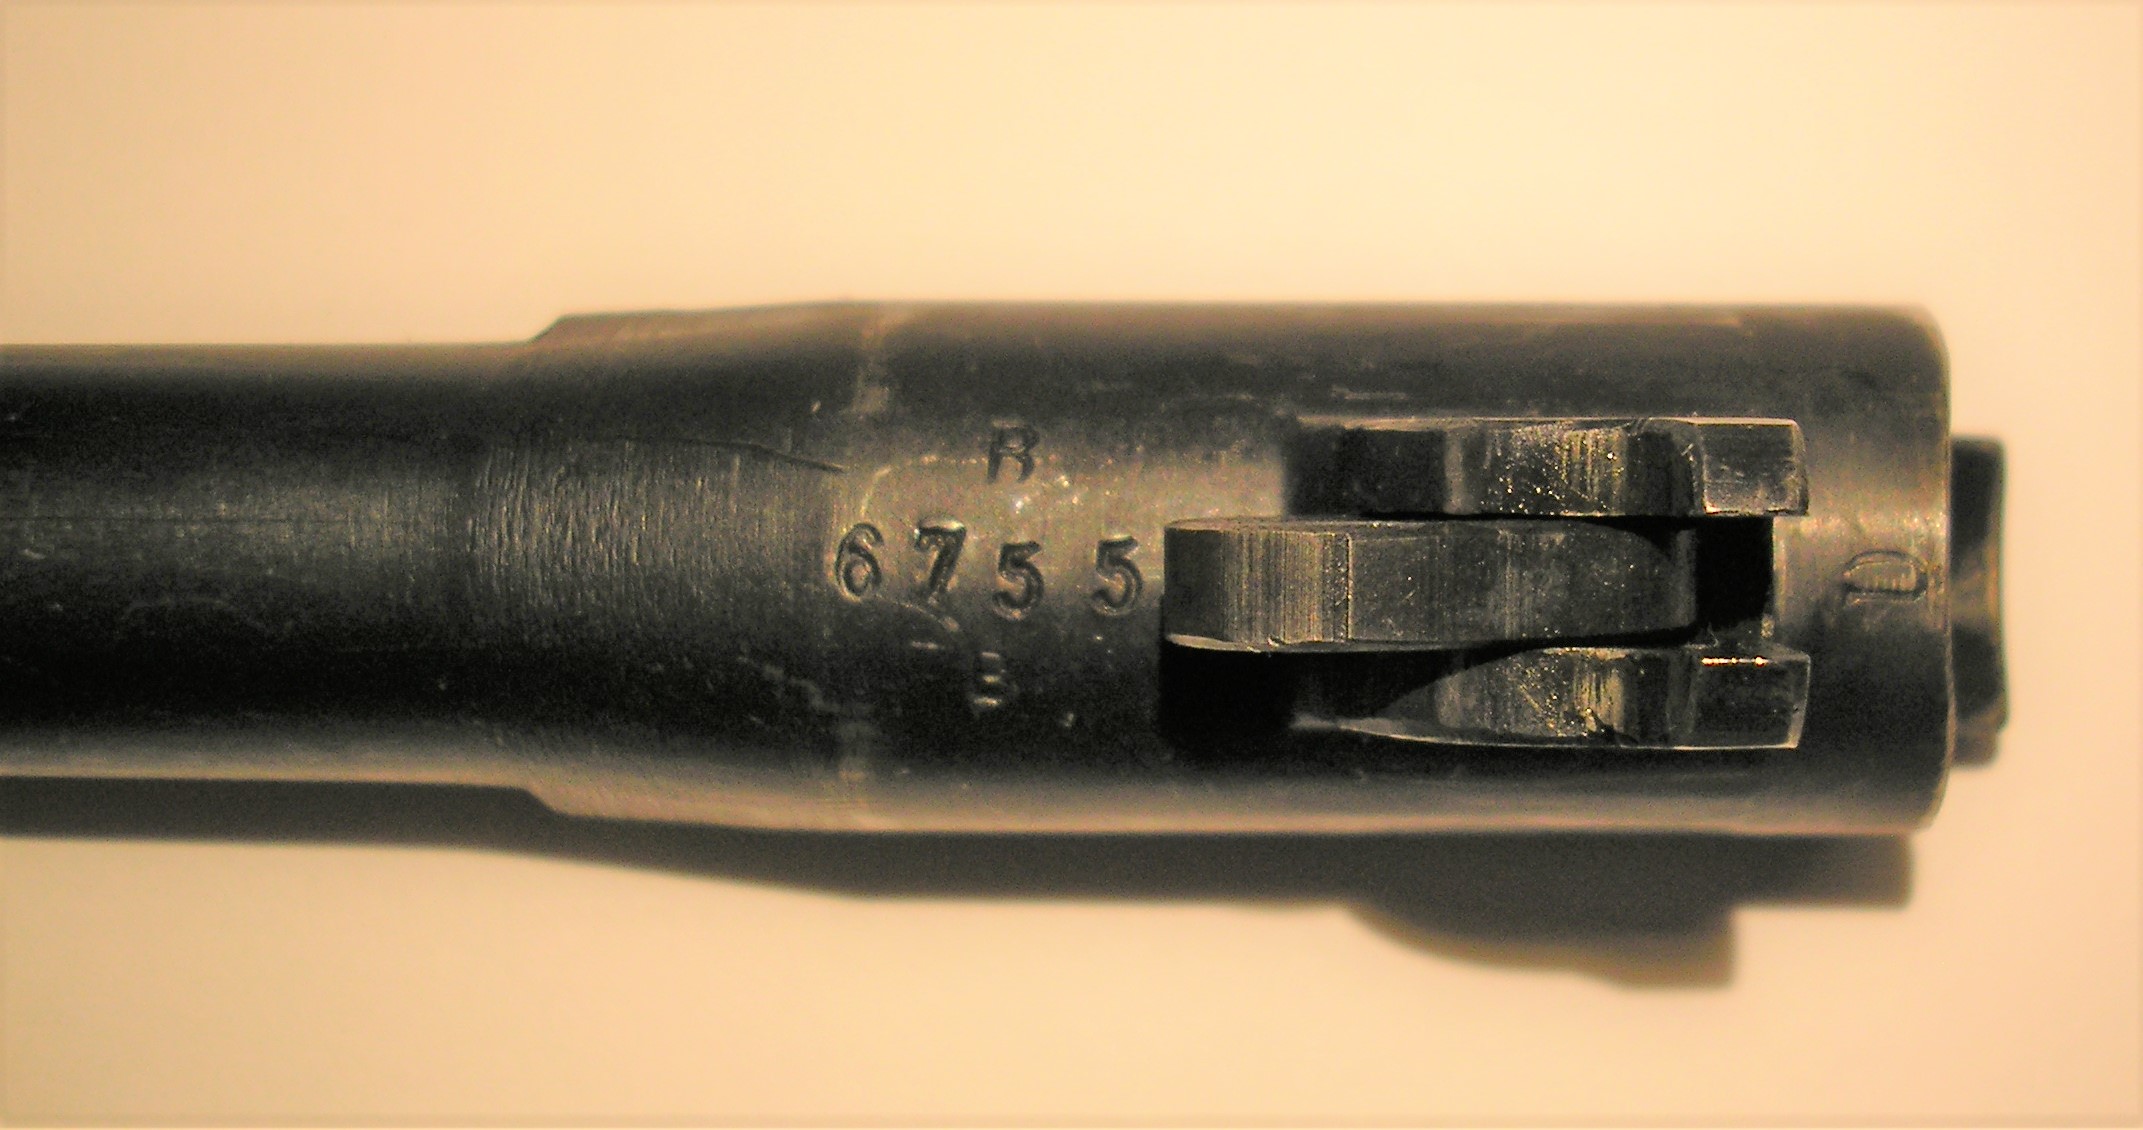 ./guns/pistol/bilder/Pistol-Kongsberg-M1914-1925-6755-8.JPG